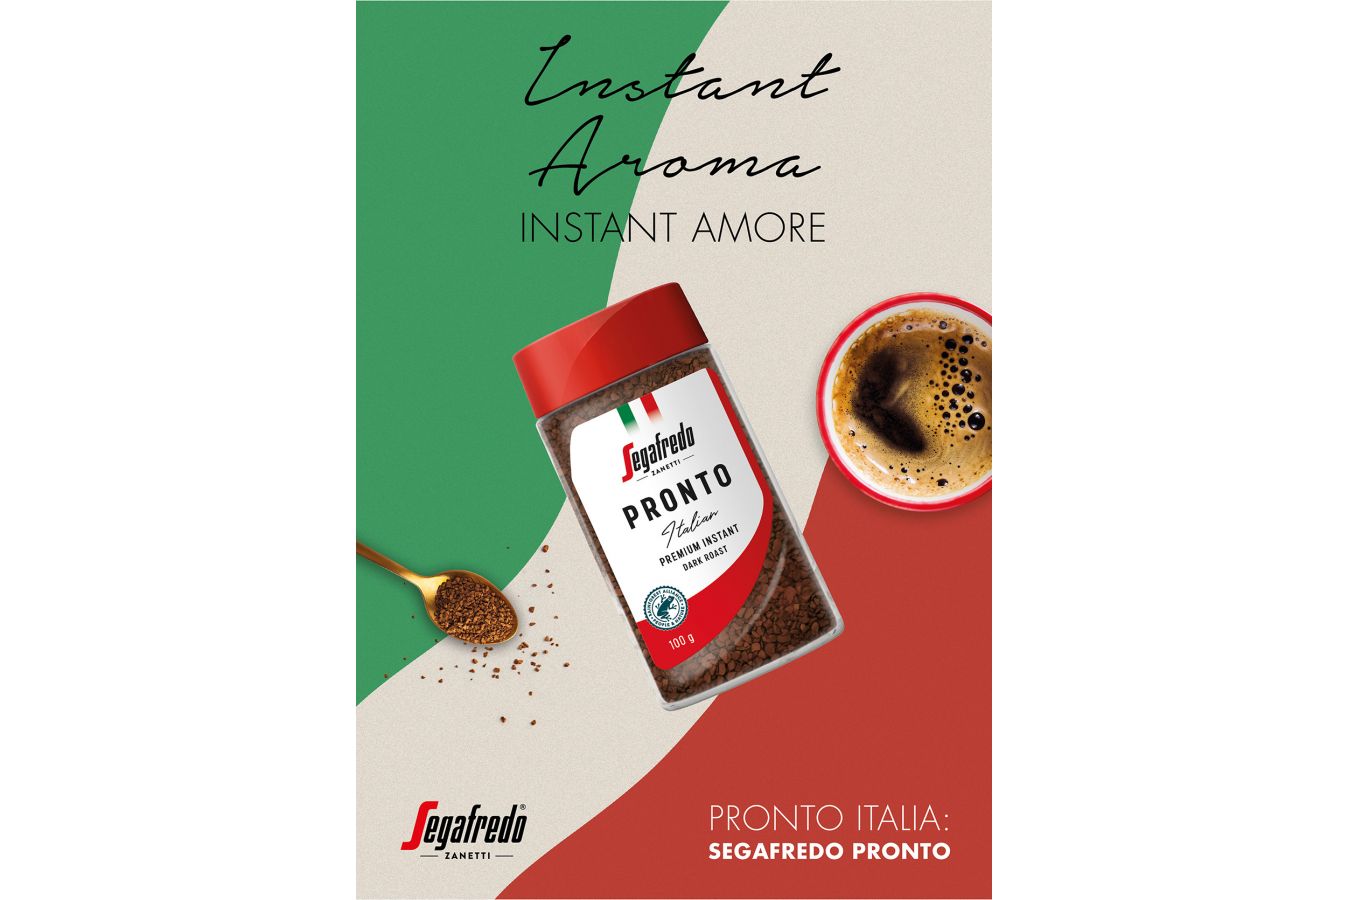 Segafredo nabízí novou prémiovou instantní kávu